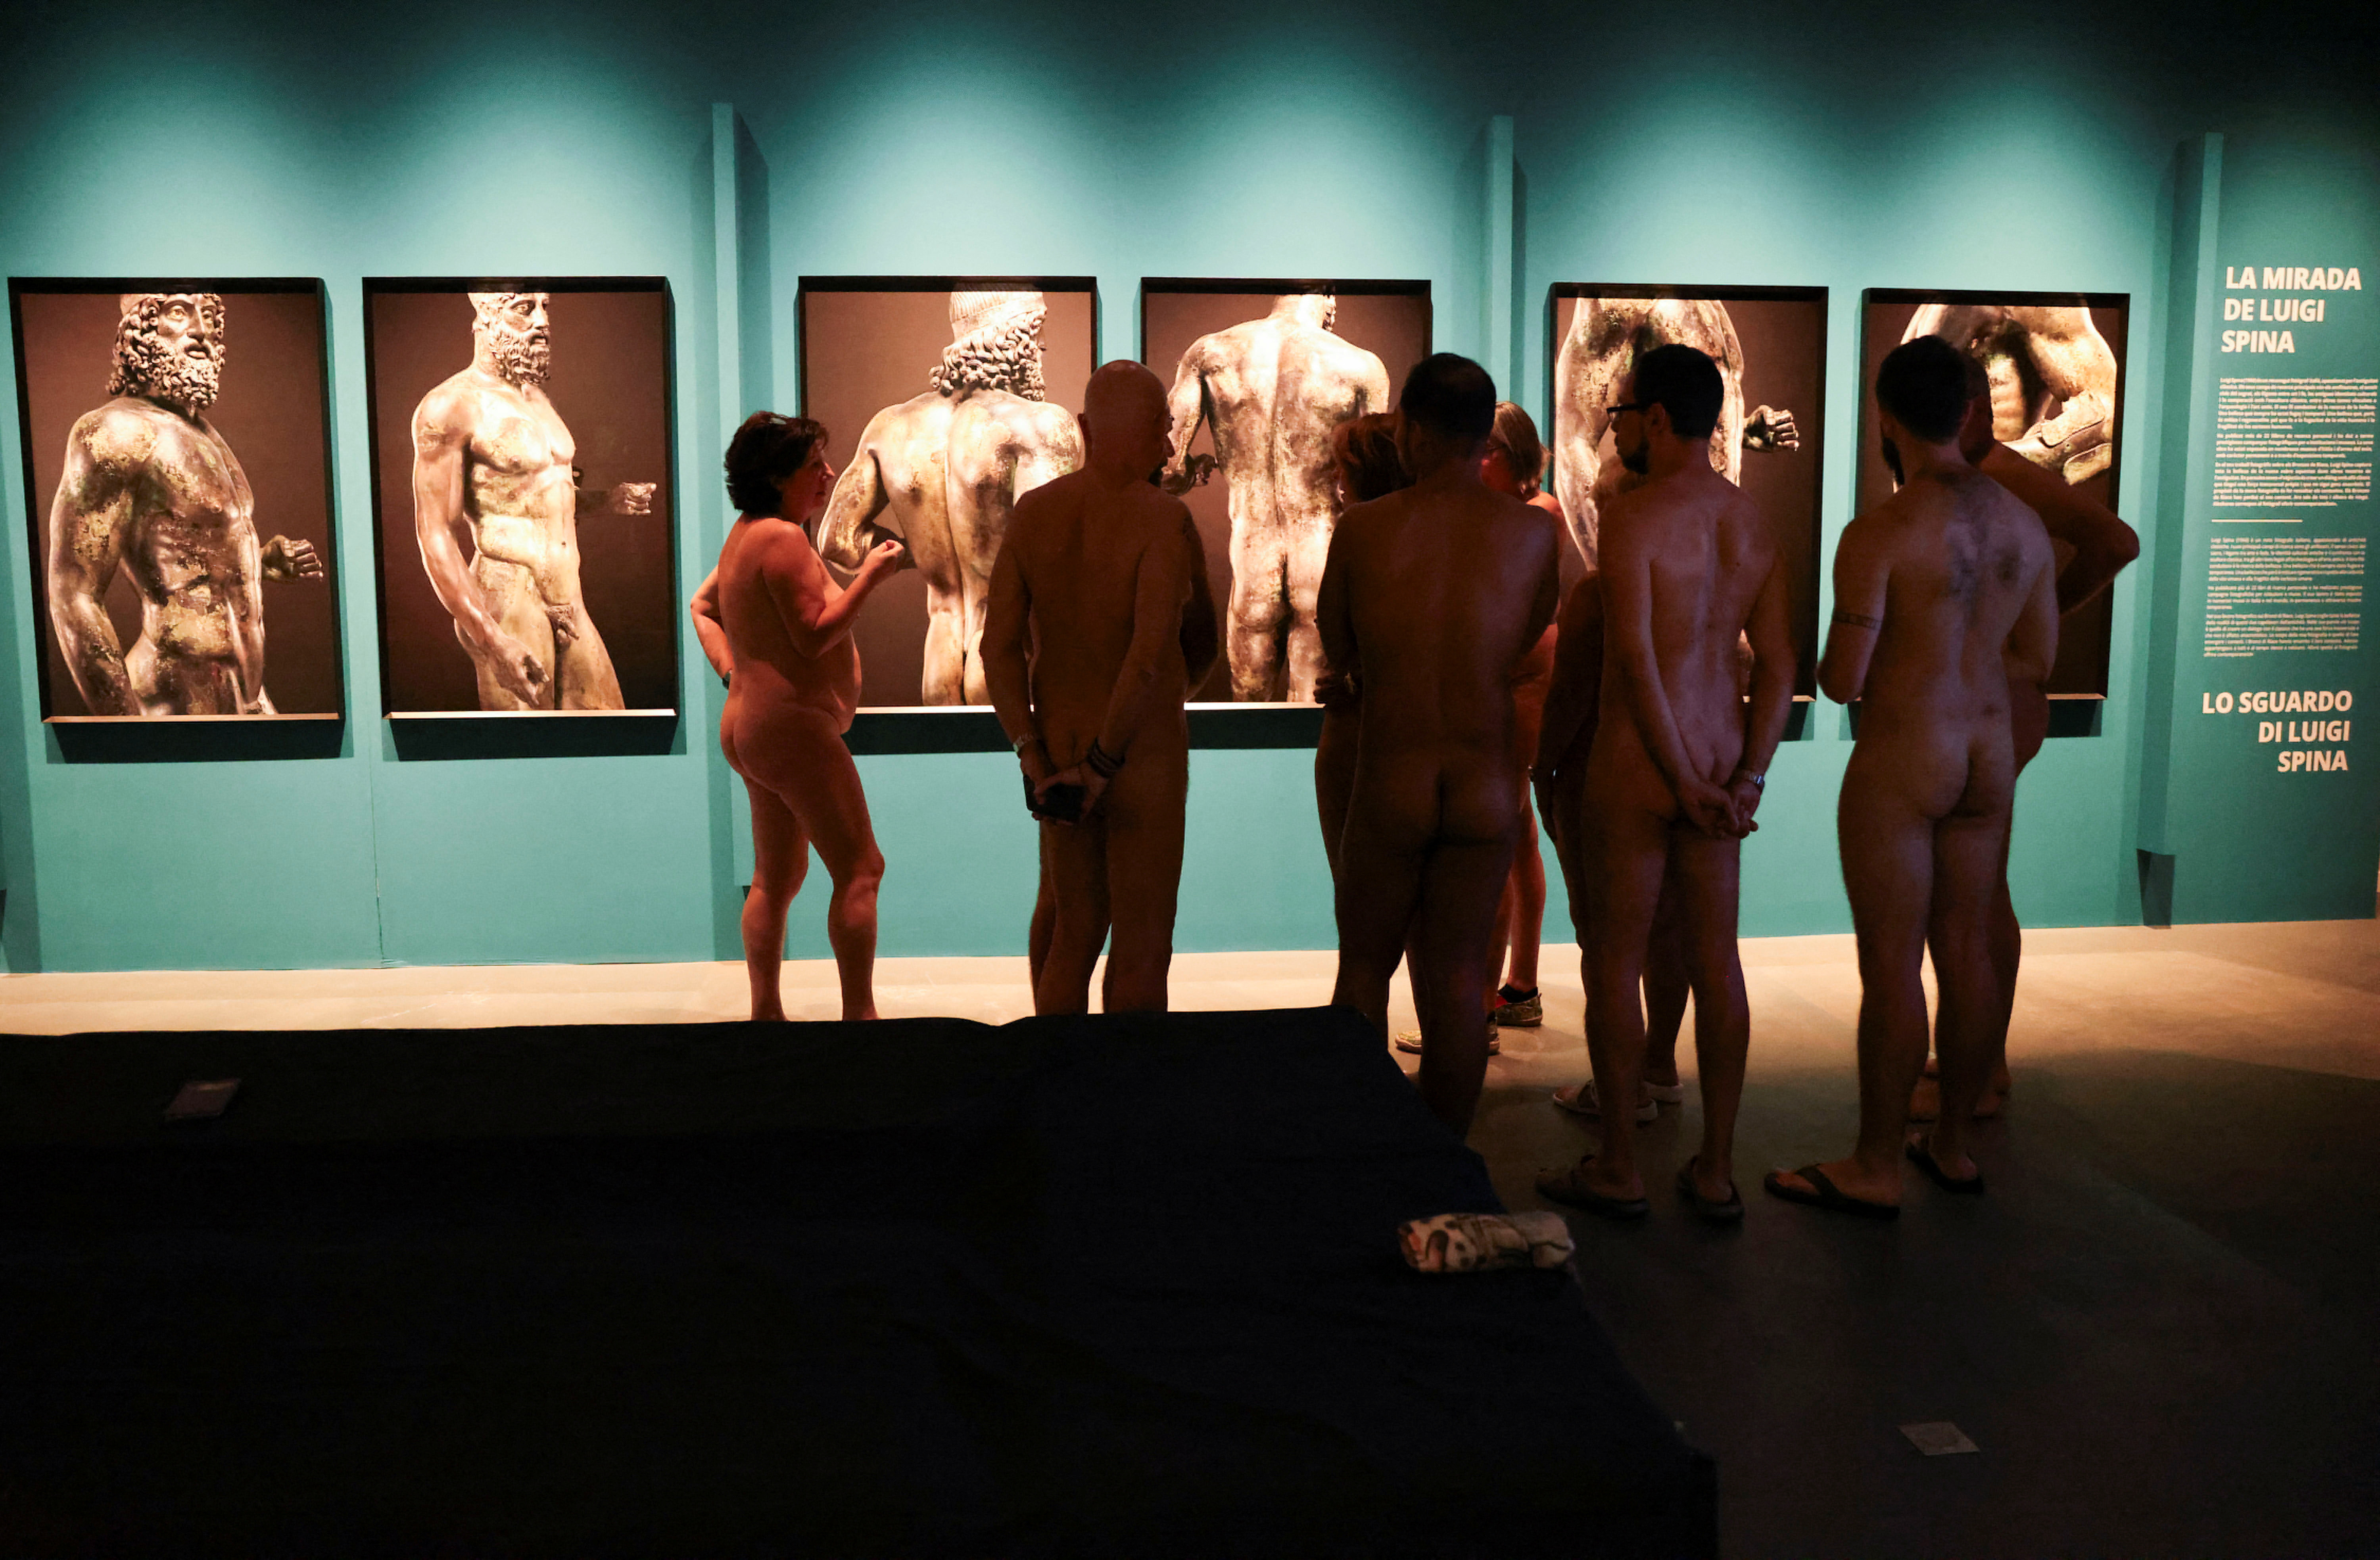 Barselona müzesi çıplaklar ziyaretçilerine açılıyor